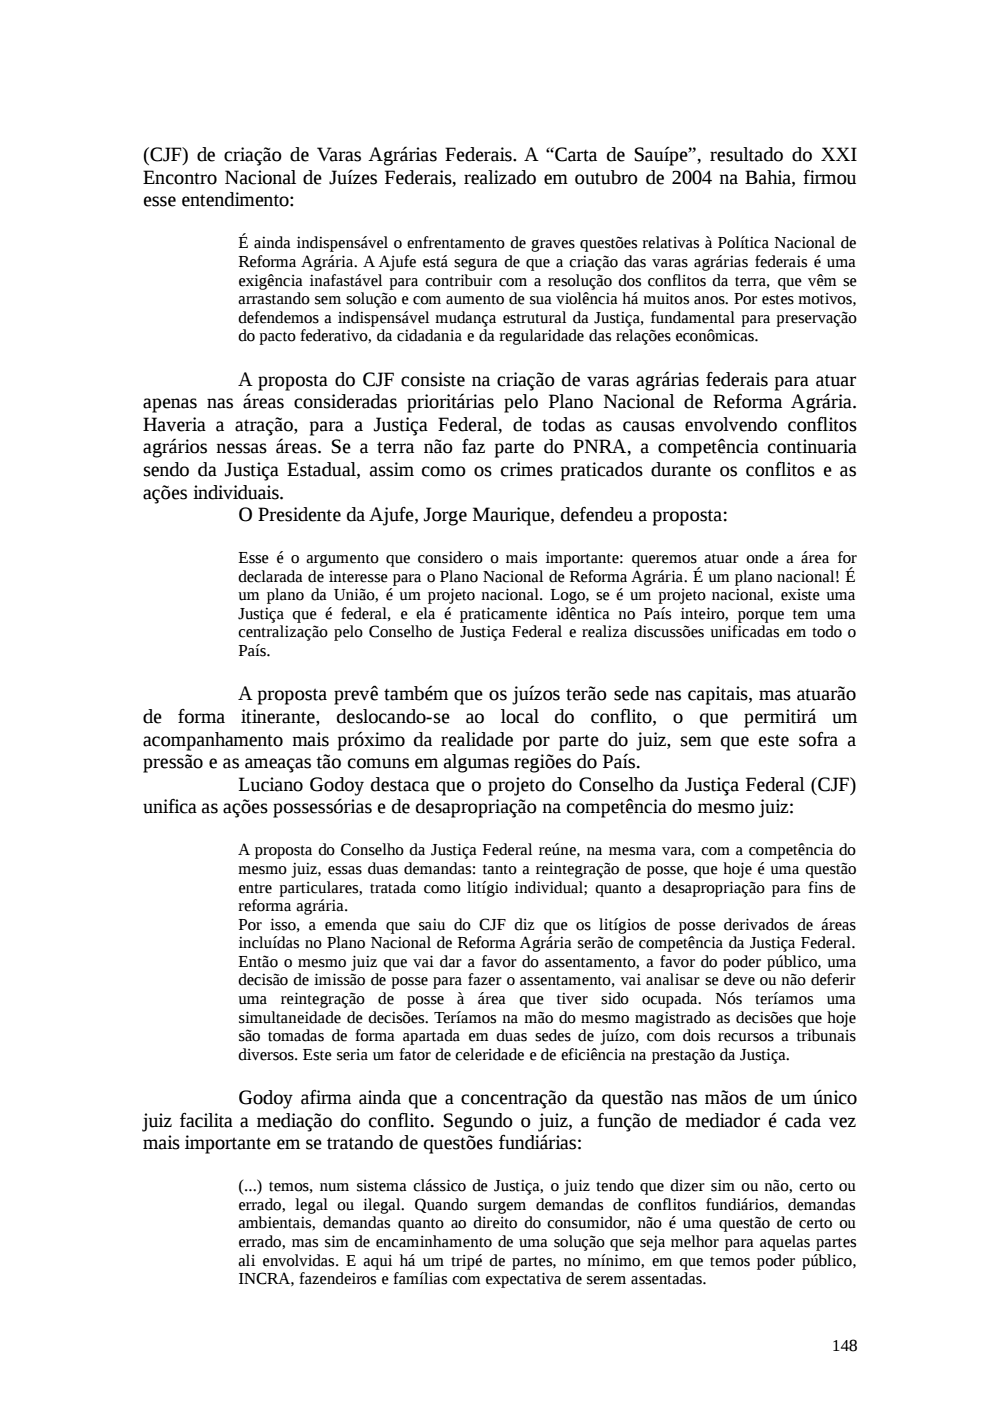 Page 148 from Relatório final da comissão